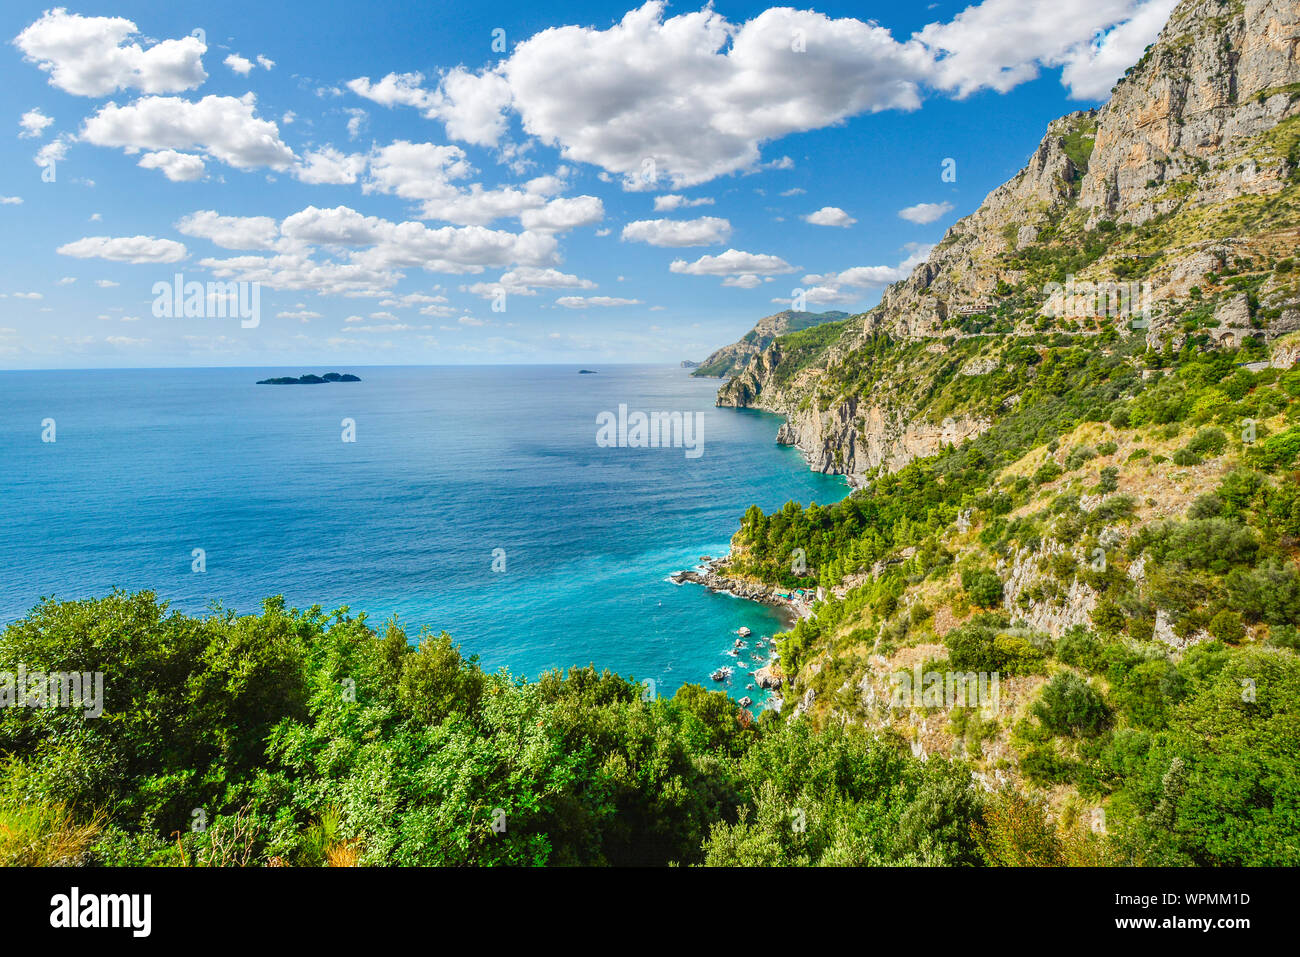 Ein Blick von der berühmten Amalfiküste fahren Sie in Richtung der Klippen, die Berge, die Küste, die Strände und das Mittelmeer in der Nähe der Stadt von Sorrento, Italien Stockfoto